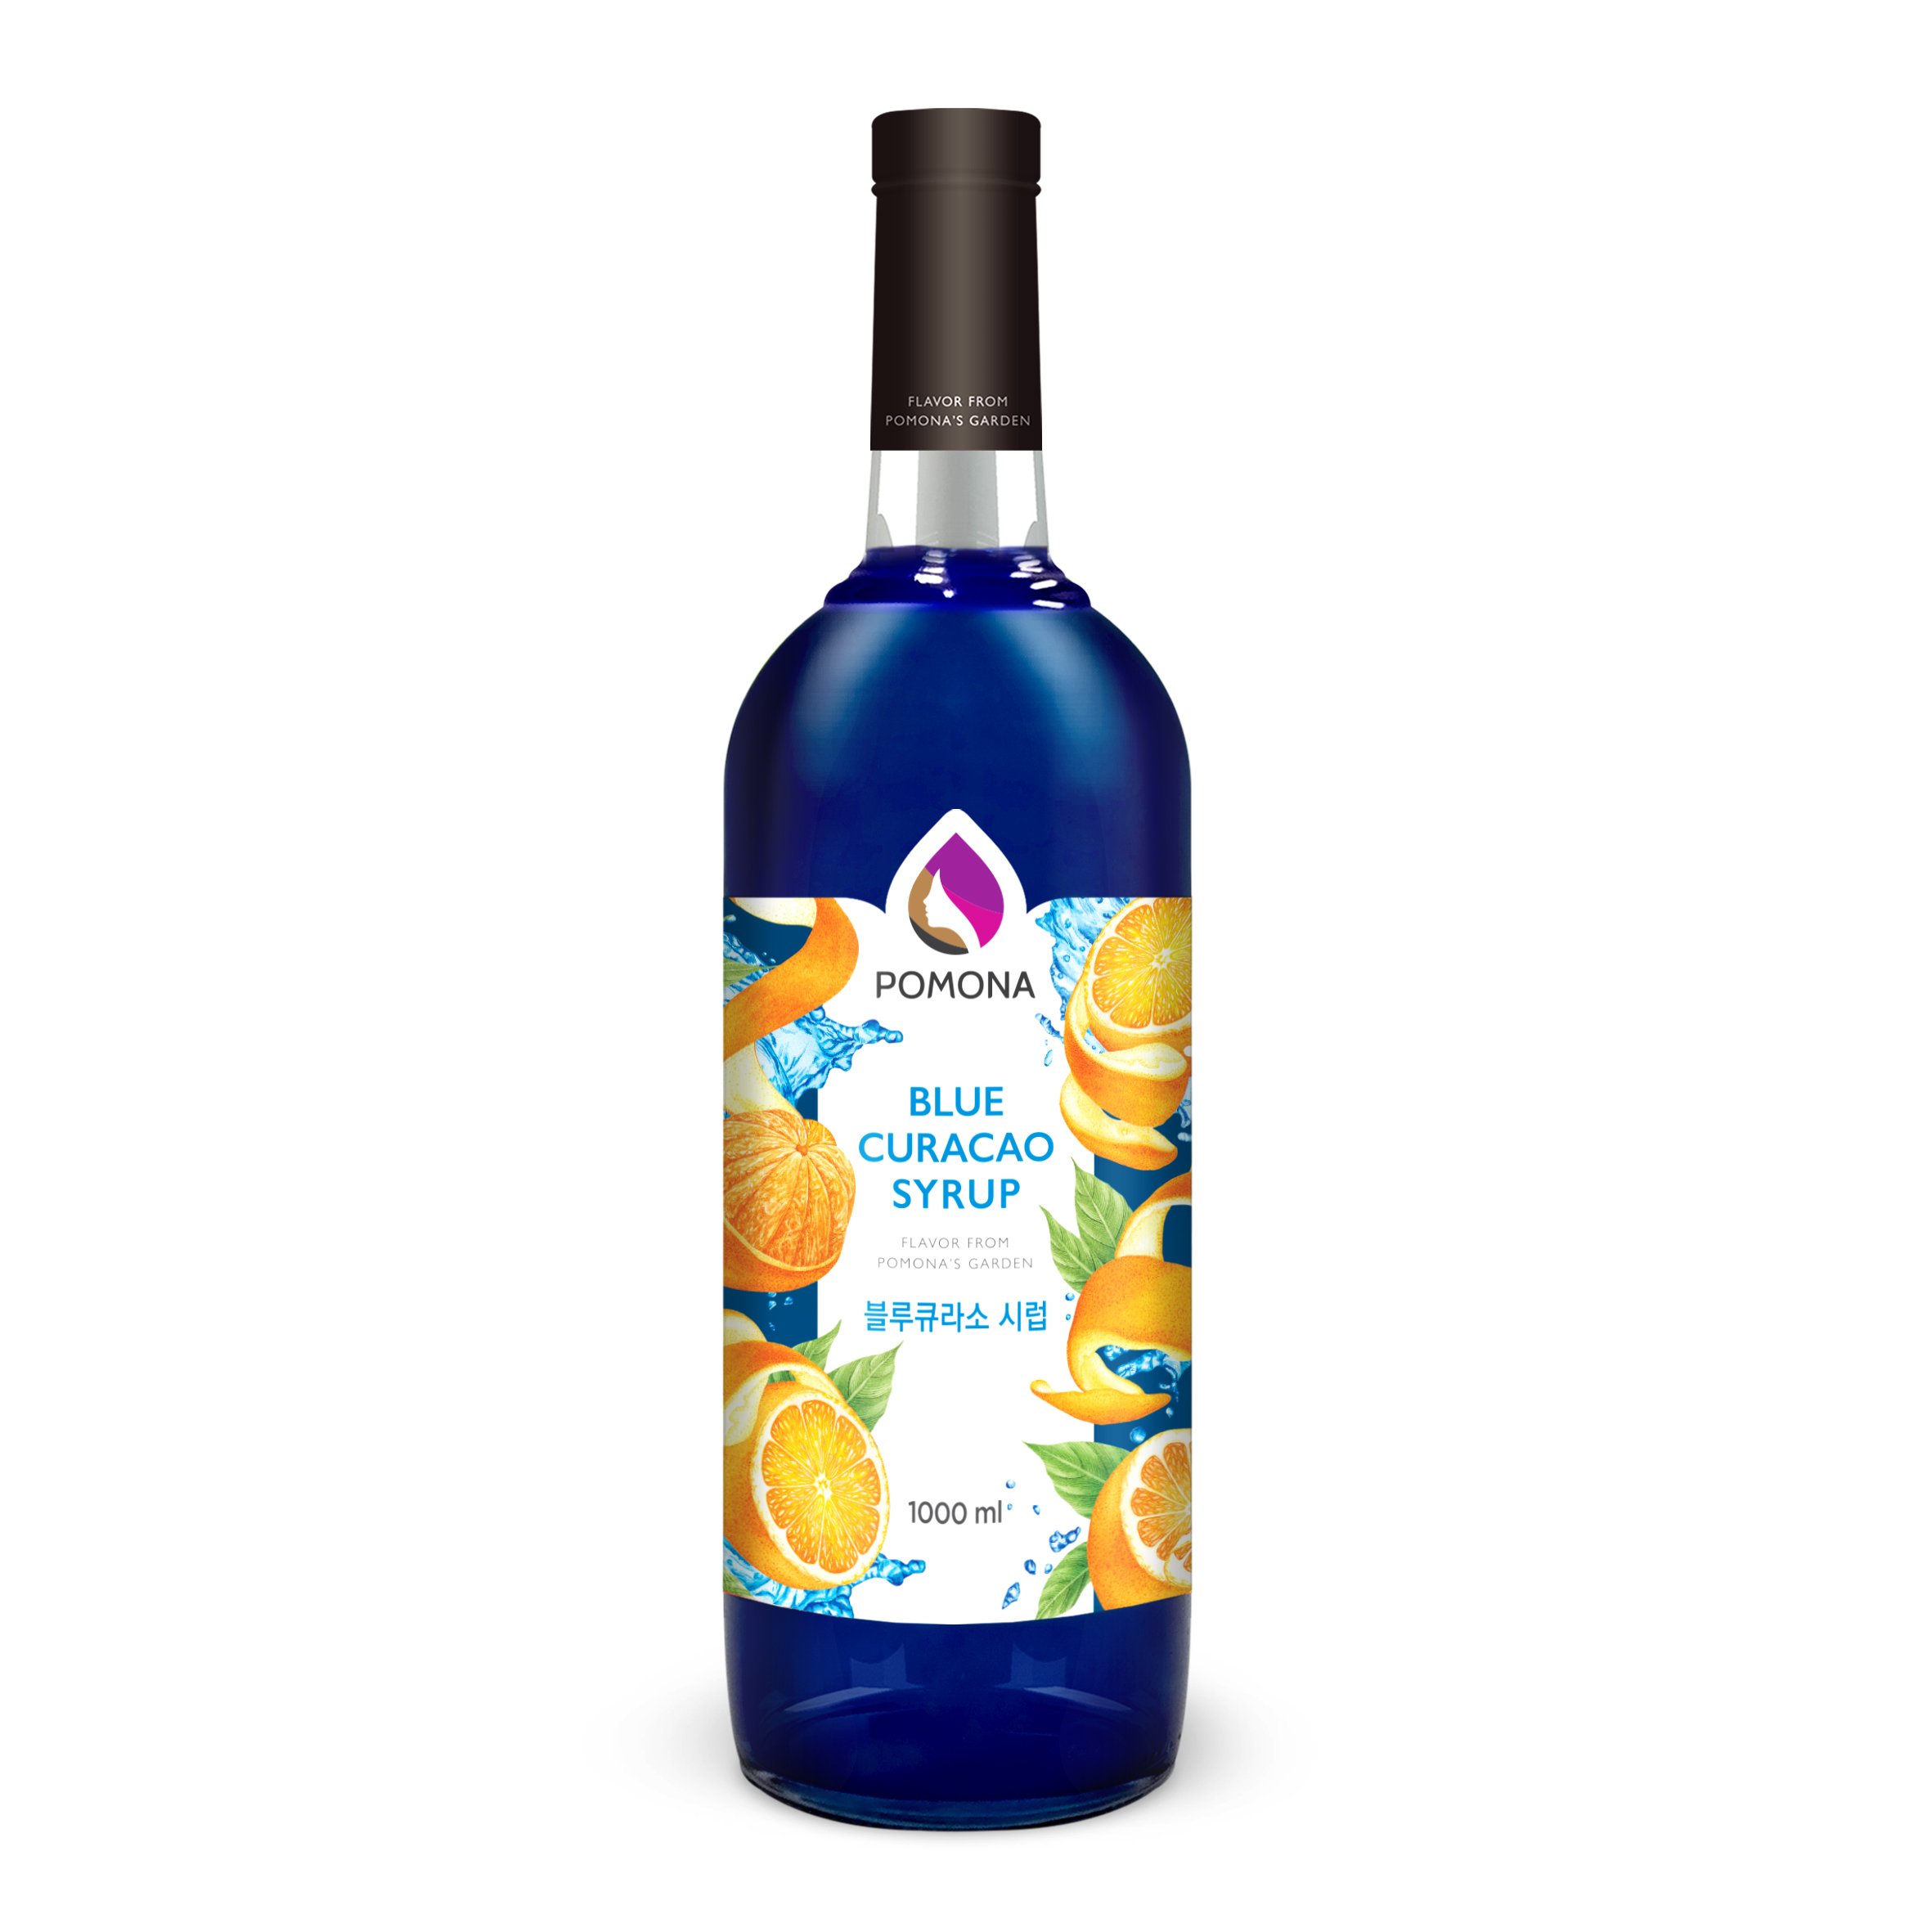 Sirô hương Vỏ cam xanh Pomona - Pomona Blue Curacao Syrup